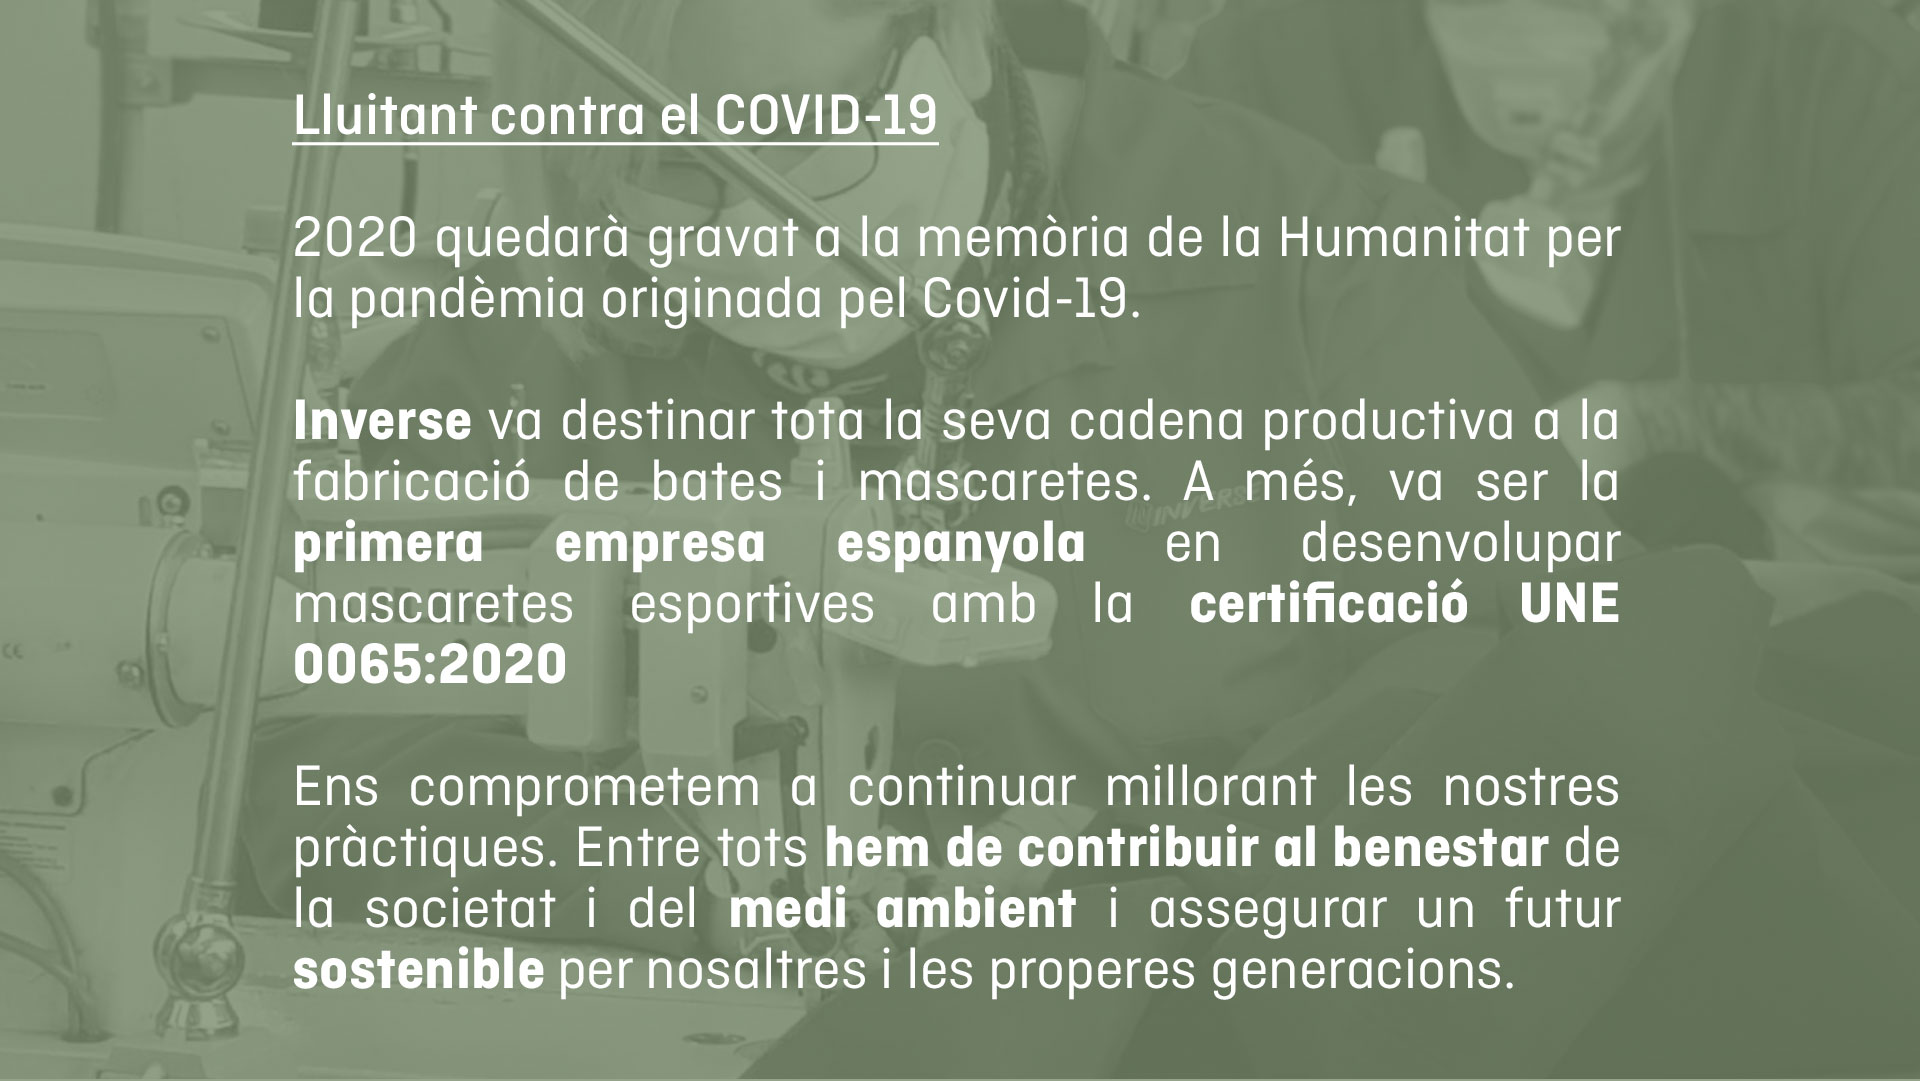 Inverse va ser la primera empresa espanyola en desenvolupar mascaretes esportives amb la certificació UNE 0065:2020